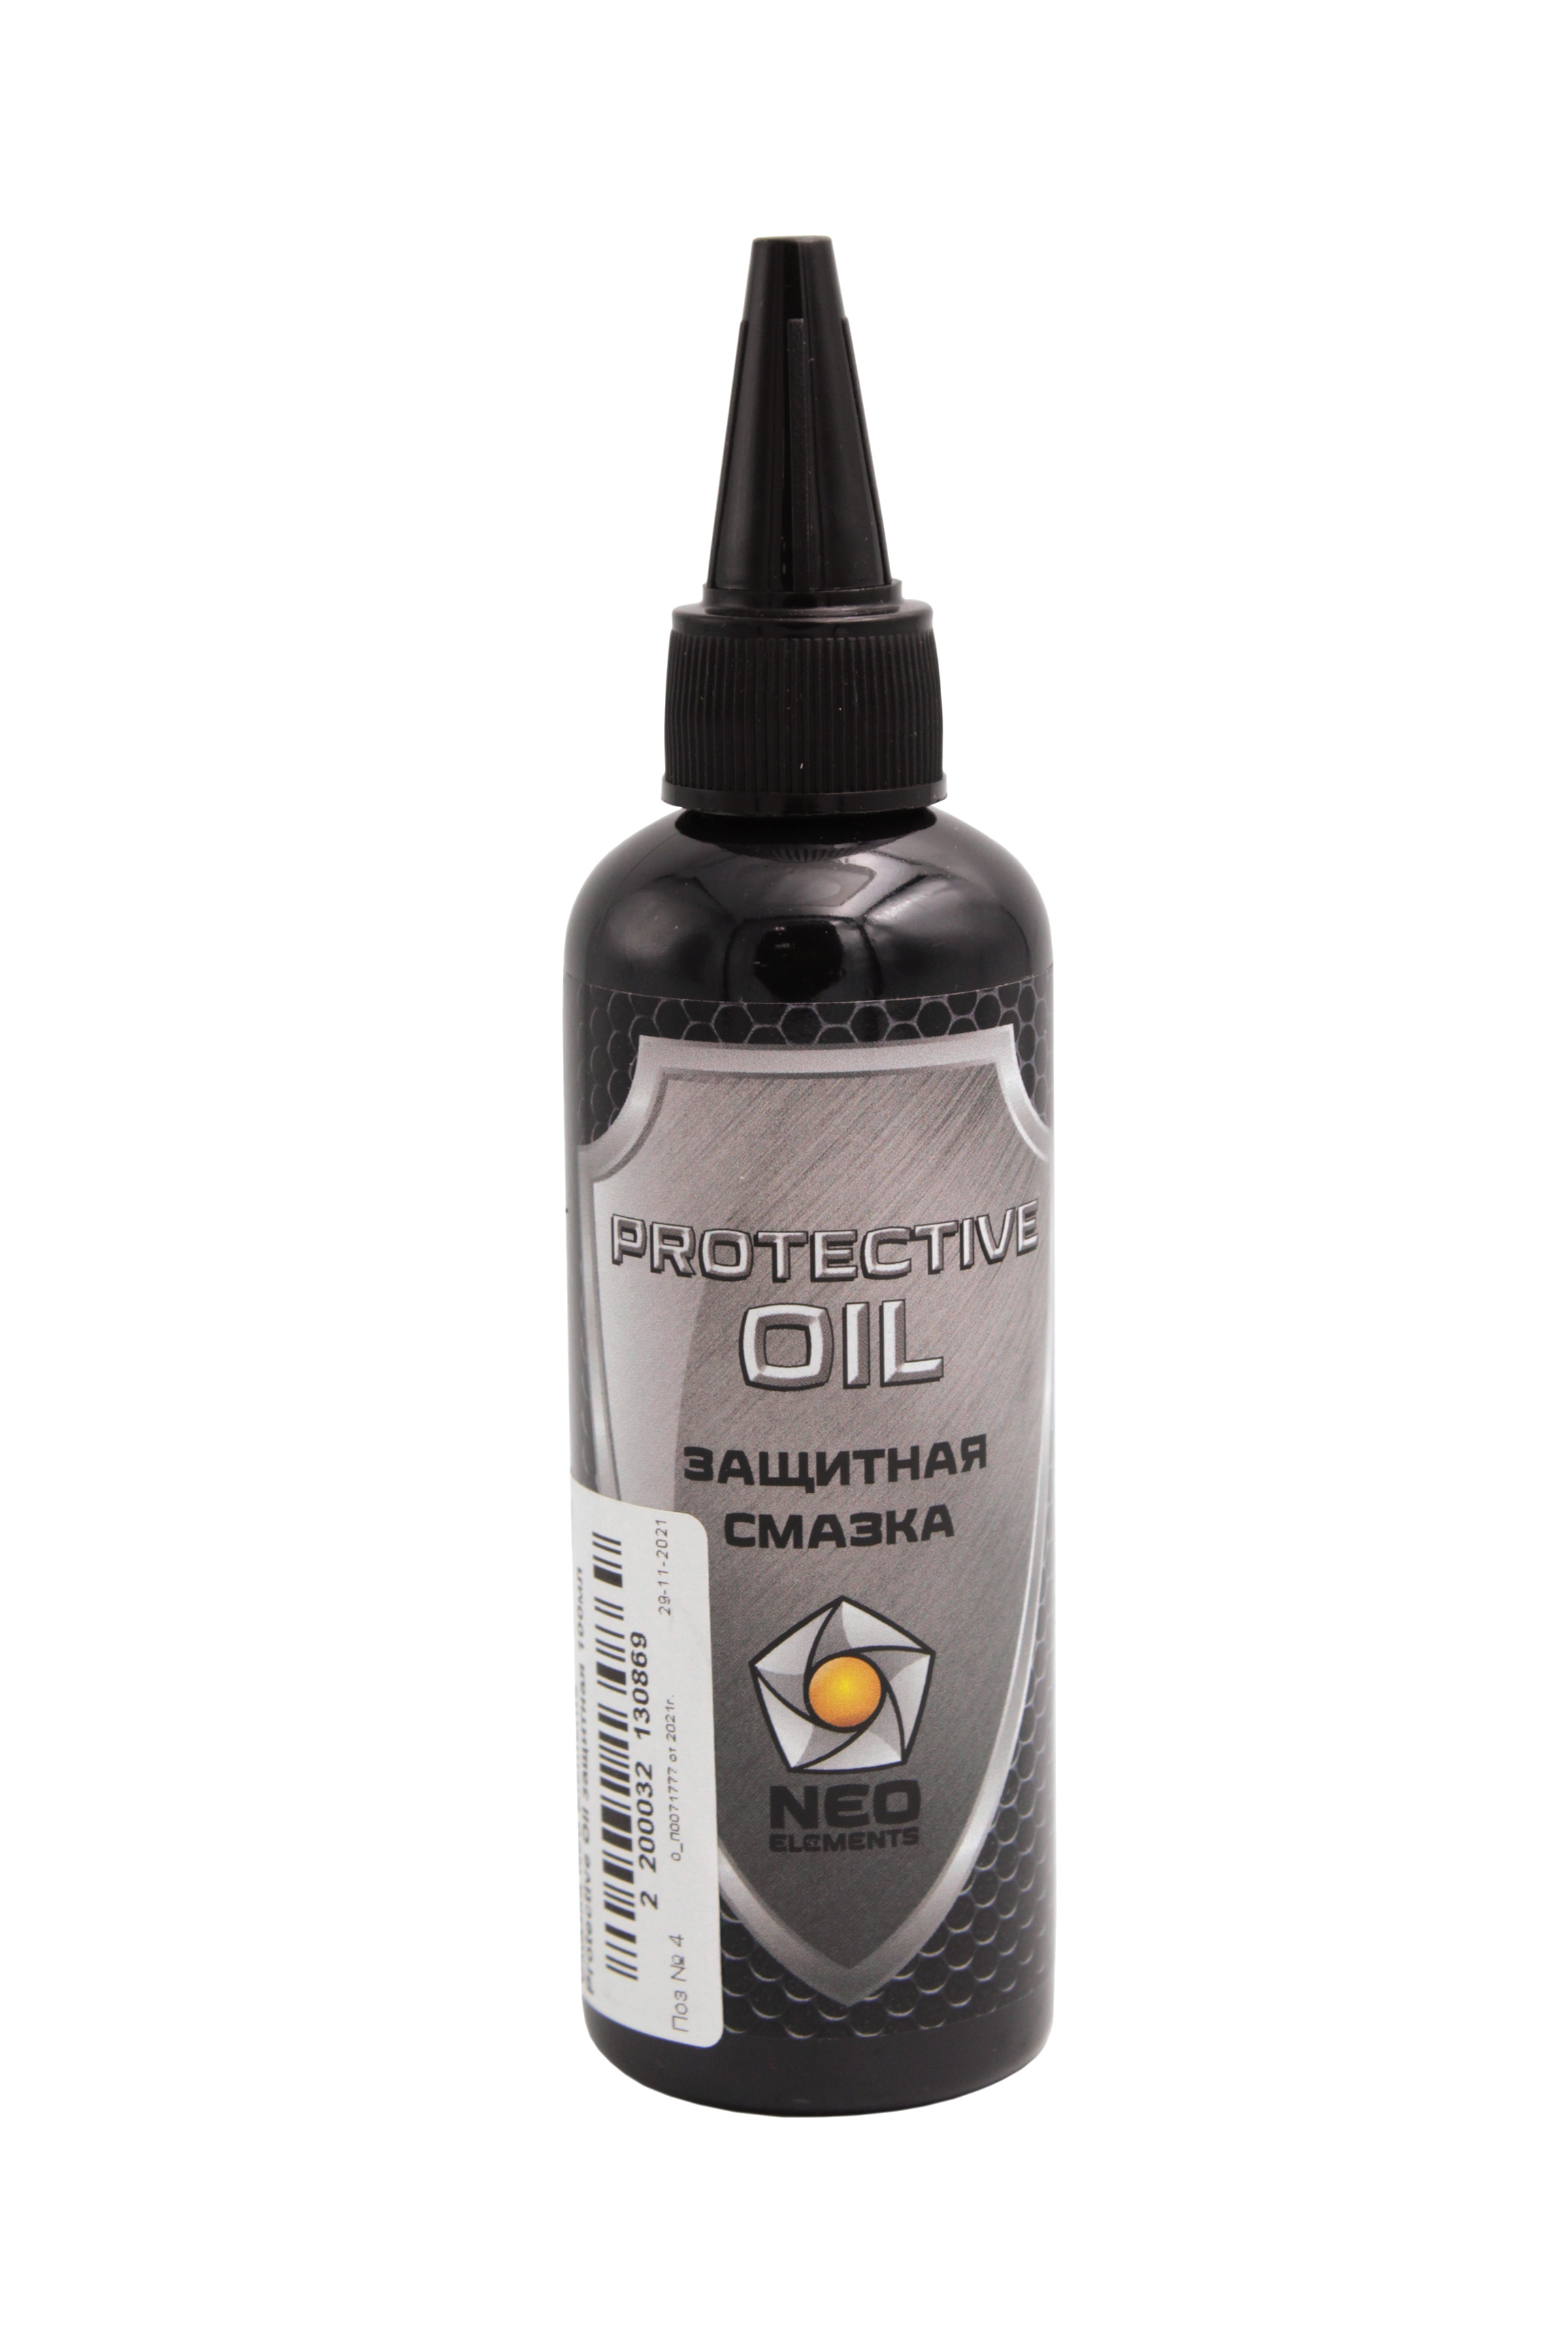 Смазка Neo Elements Protective Oil защитная 100мл - фото 1